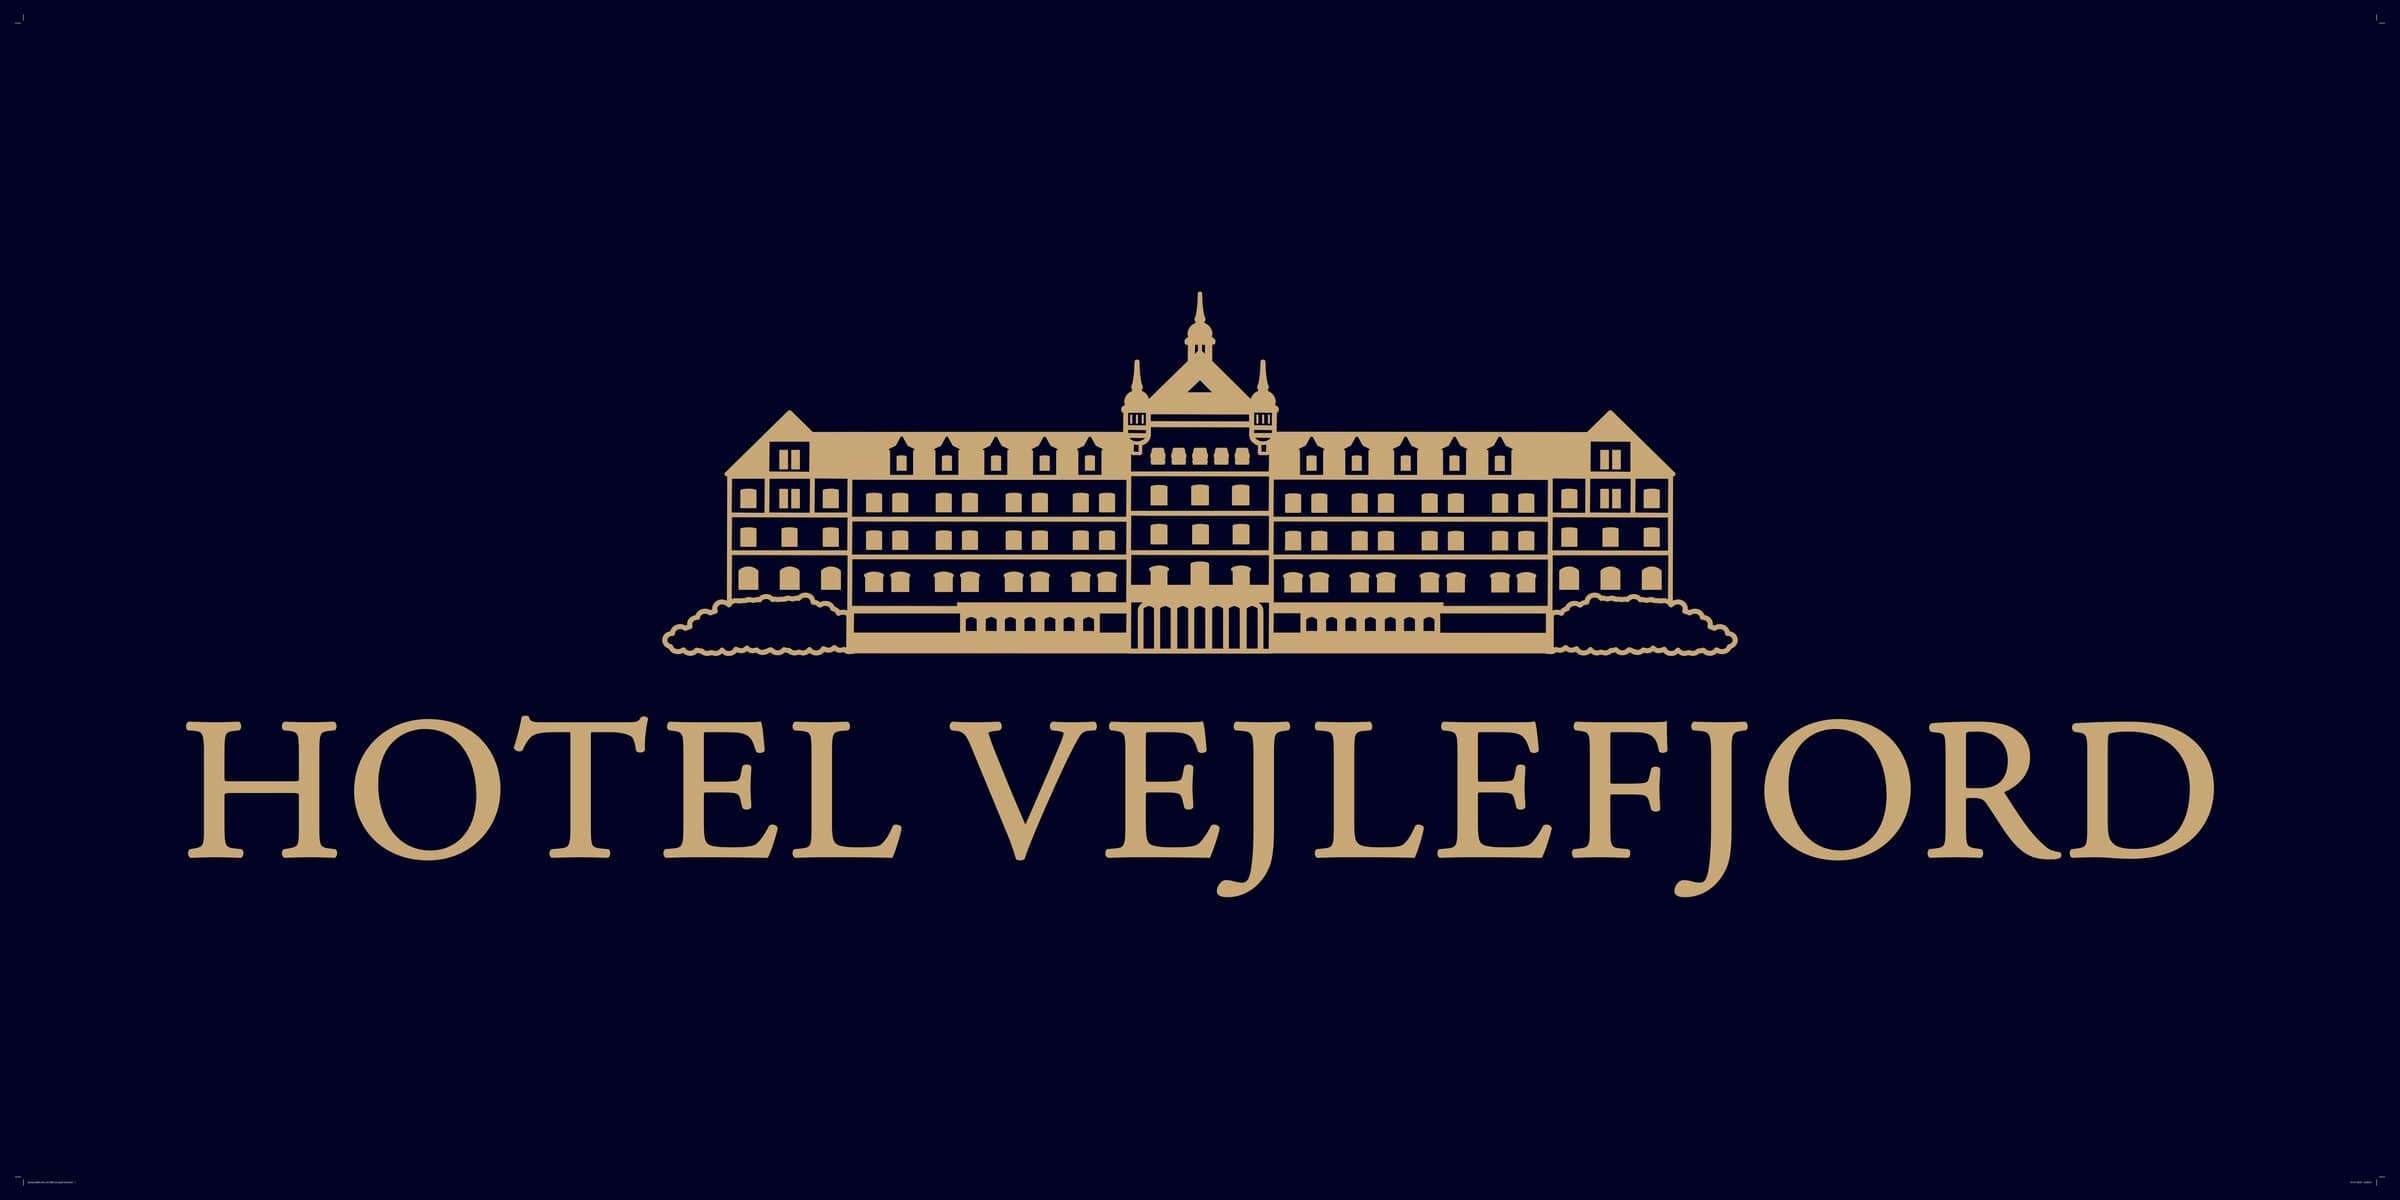 Hotel-vejle-fjordSponsorskilt Søndermarkshallen 200 x 100 cm